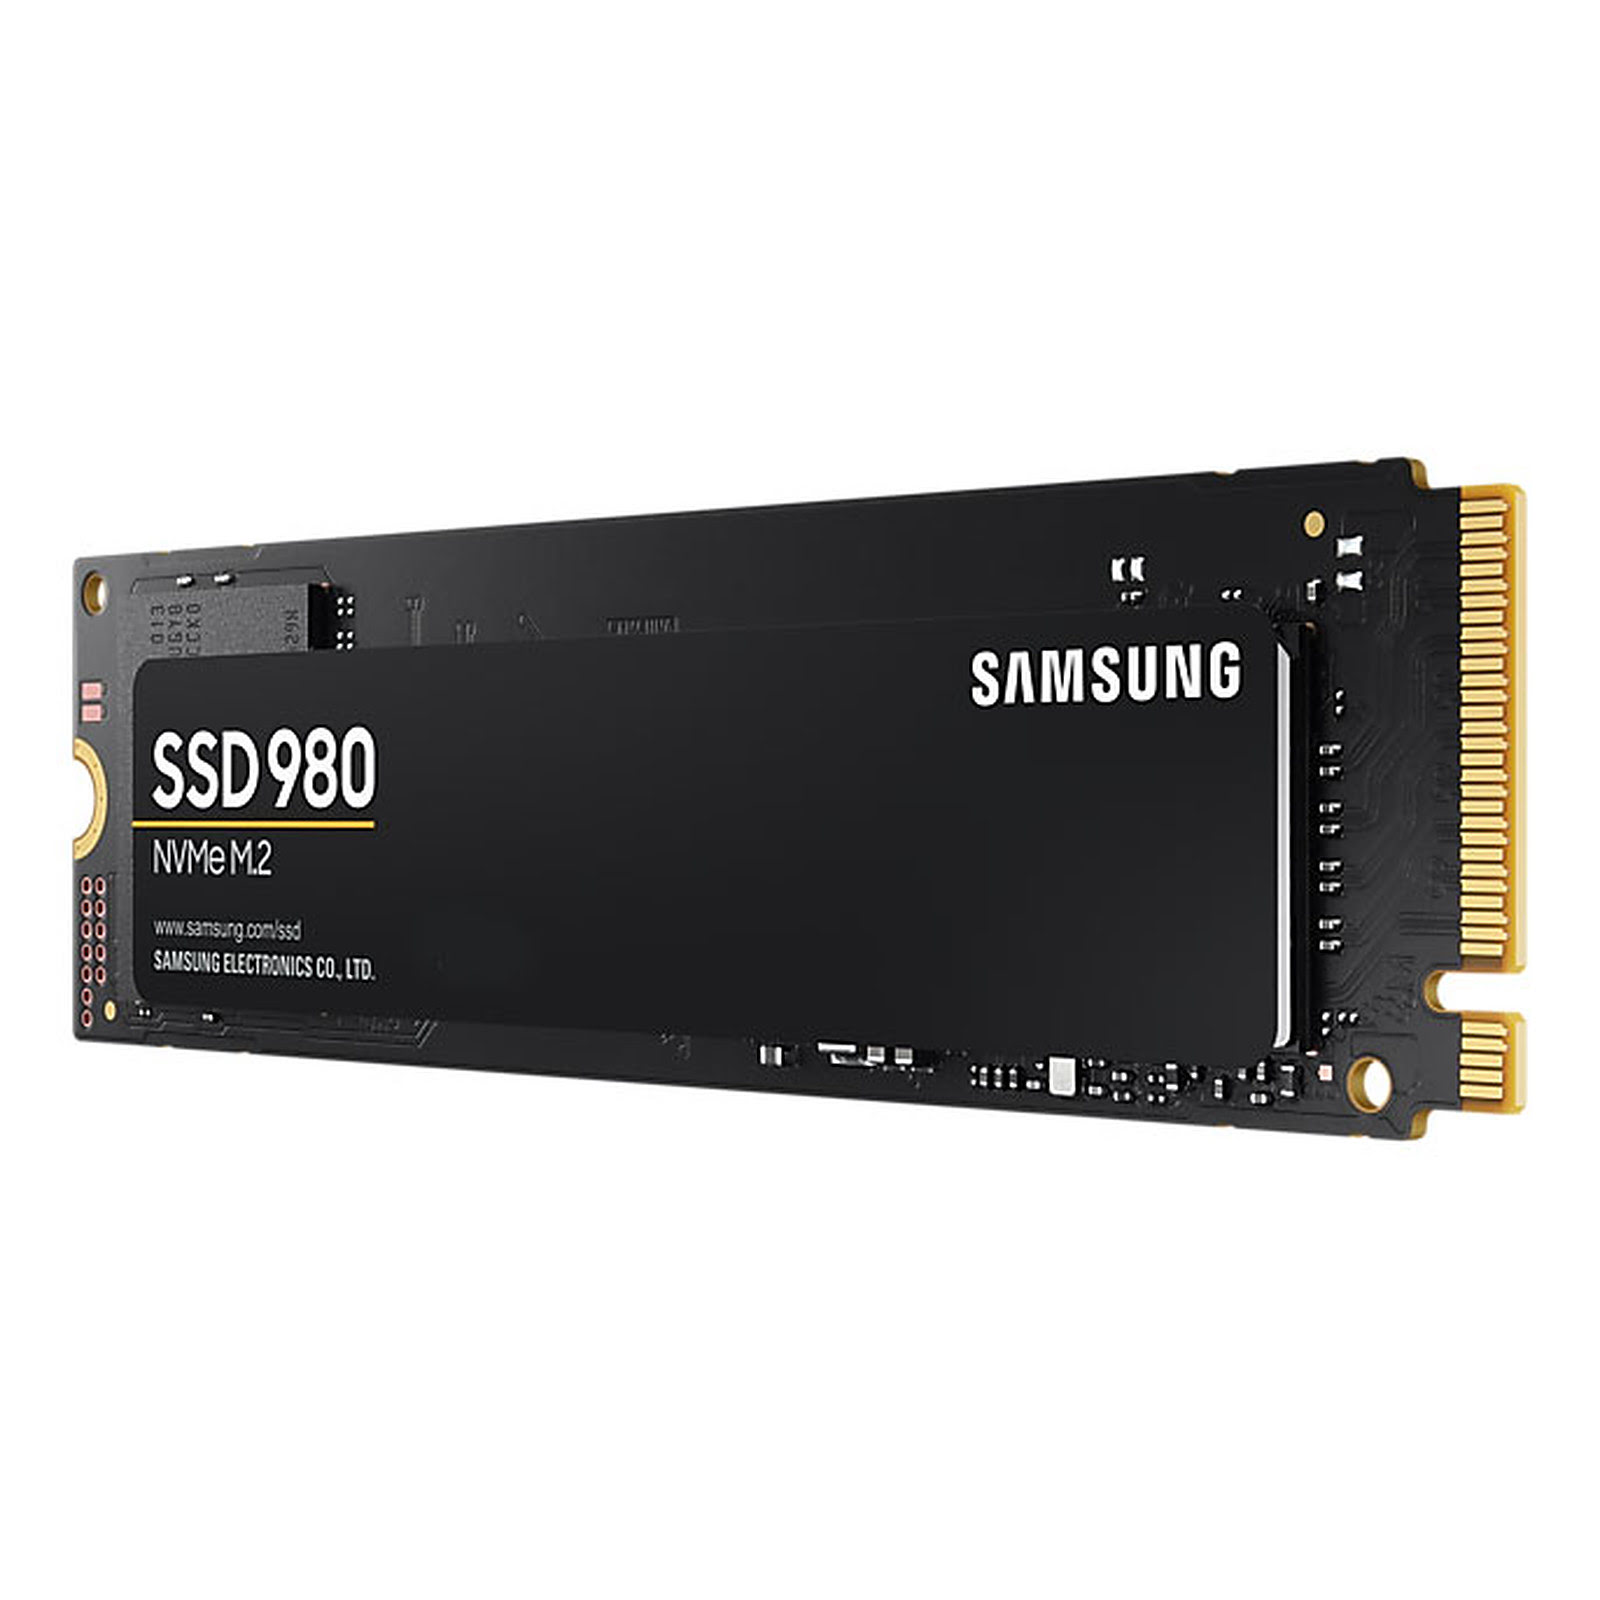 Samsung 980 960Go-1To M.2 - Disque SSD Samsung - Cybertek.fr - 2